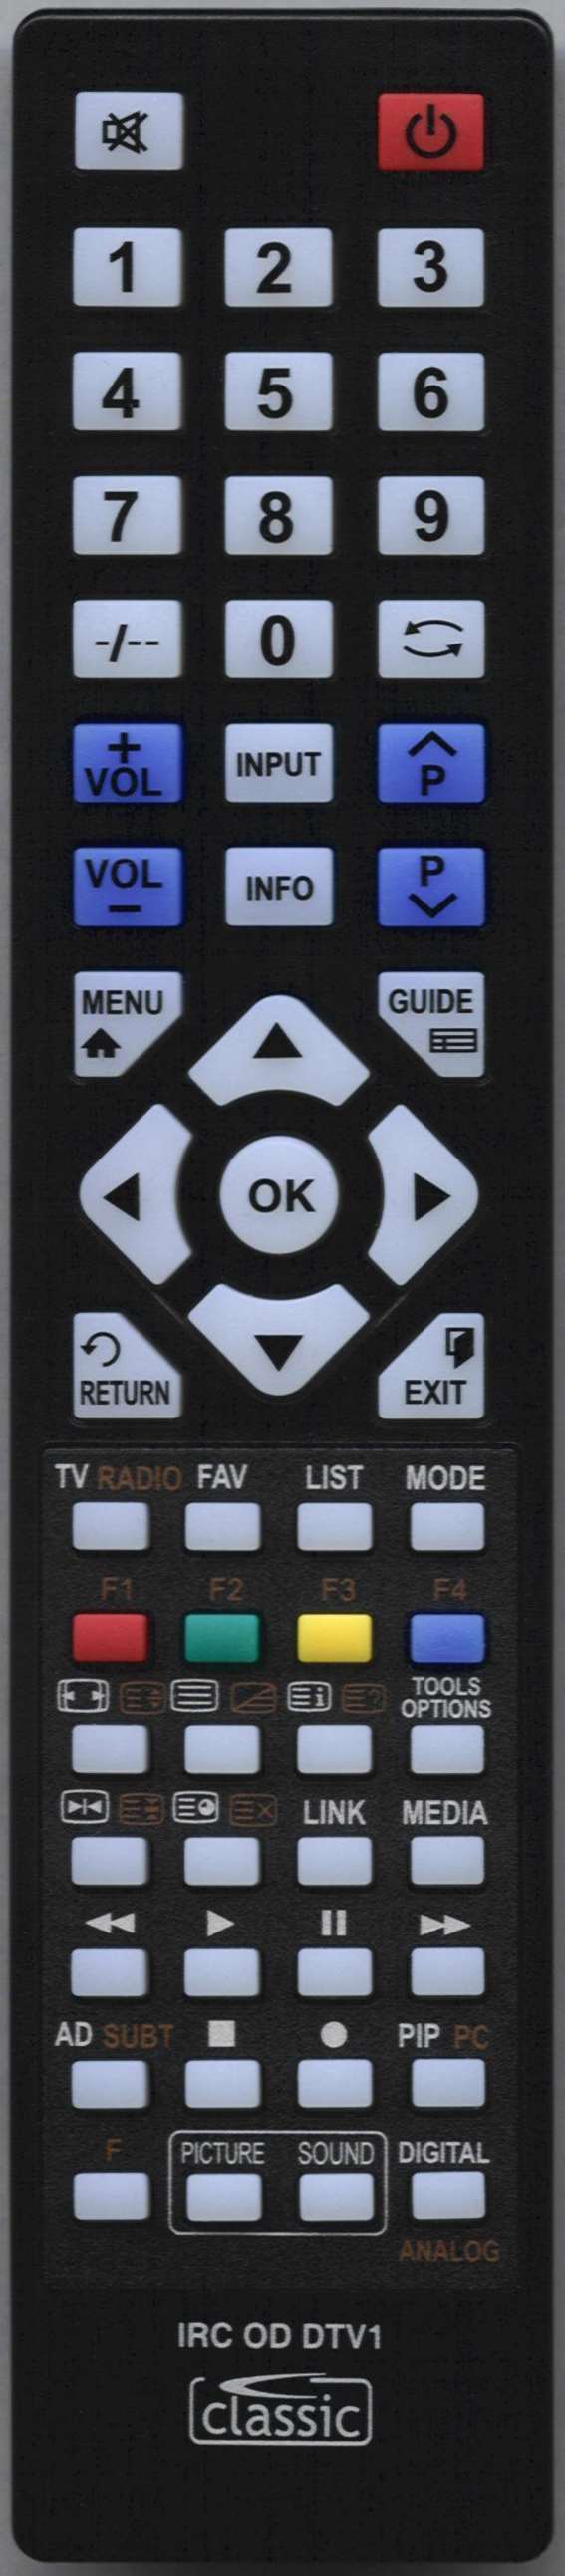 AOC N 32W551T Remote Control